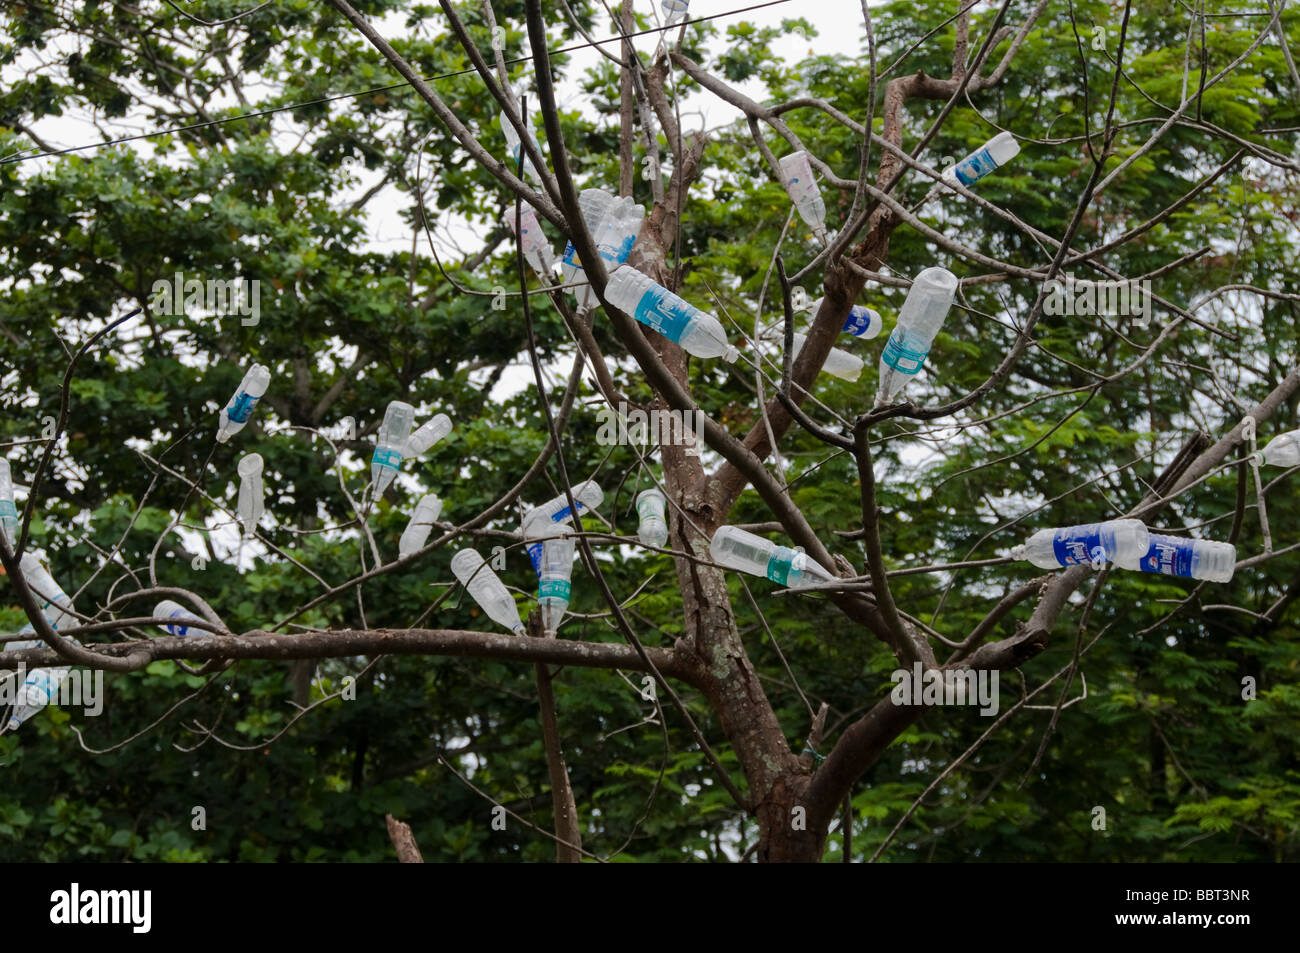 La bottiglia di plastica impilate su albero, salvare la terra del messaggio visualizzato in un villaggio rurale in India Foto Stock